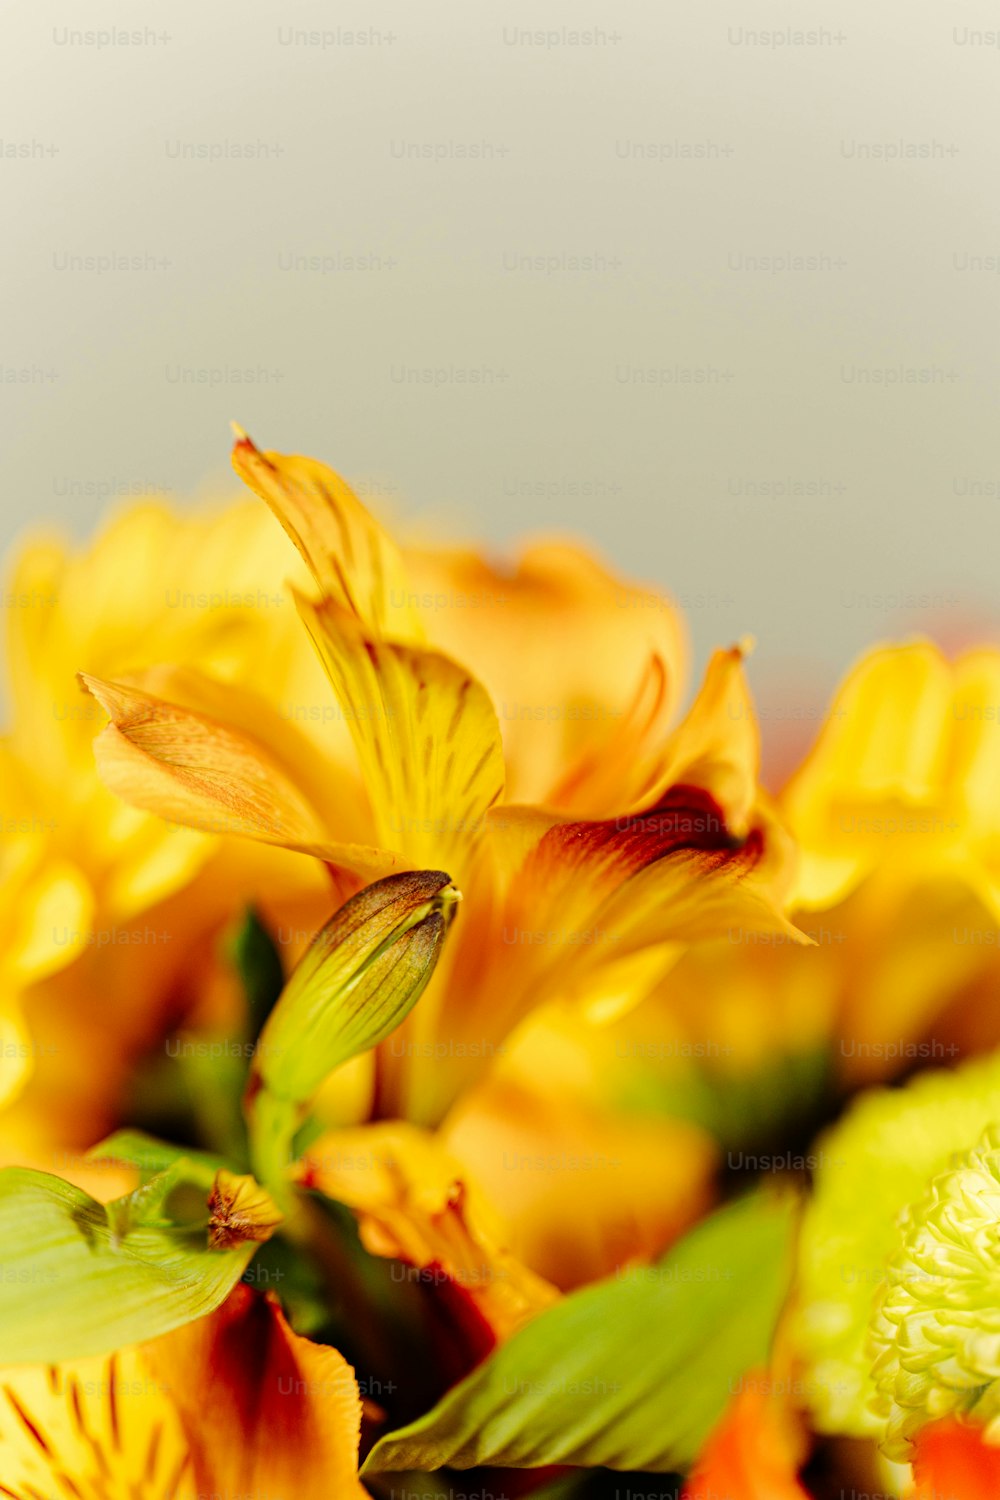 un primo piano di un mazzo di fiori gialli